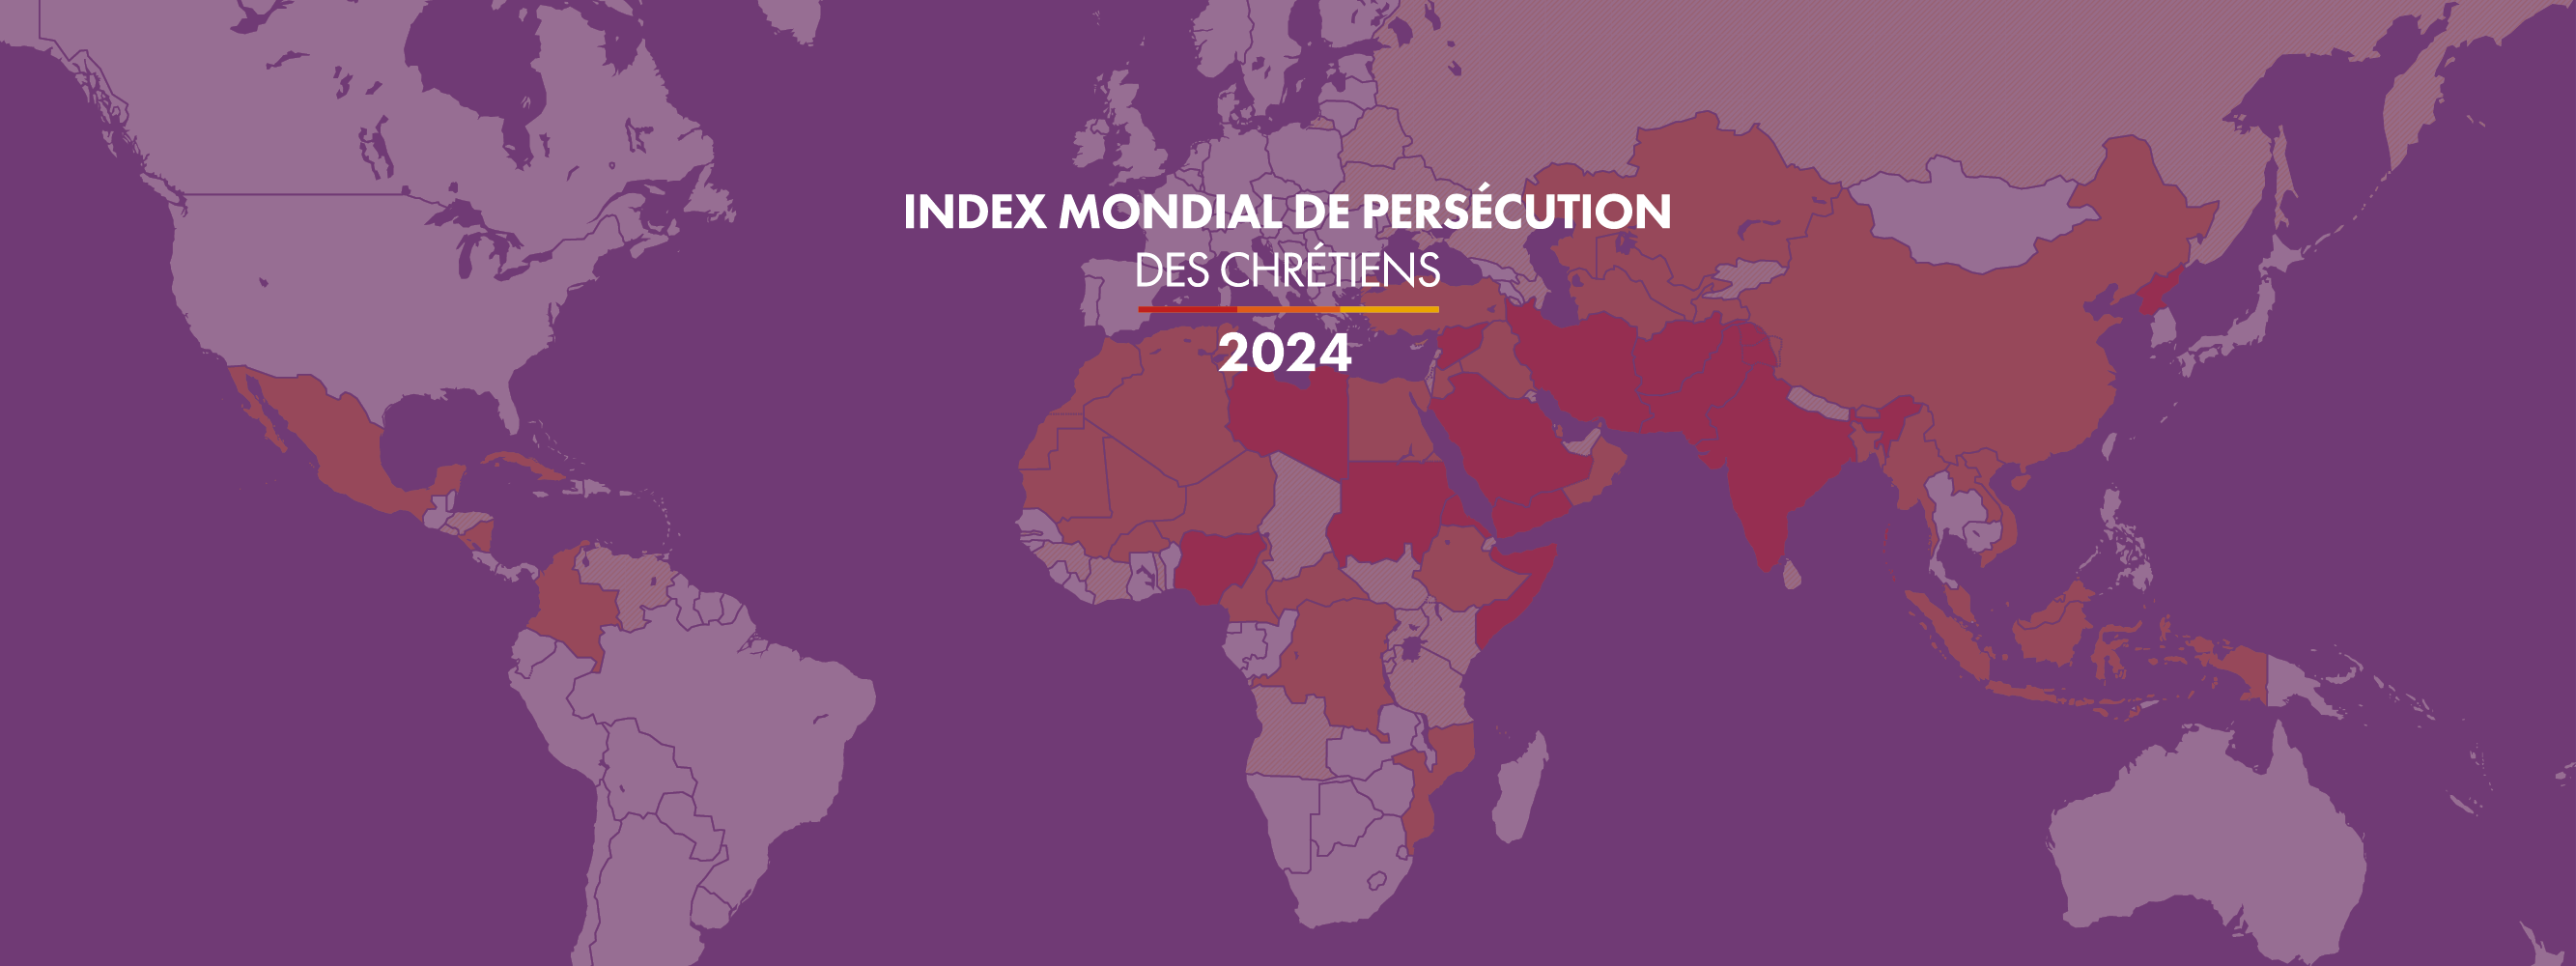 Index mondial de persecution des chretiens 2024